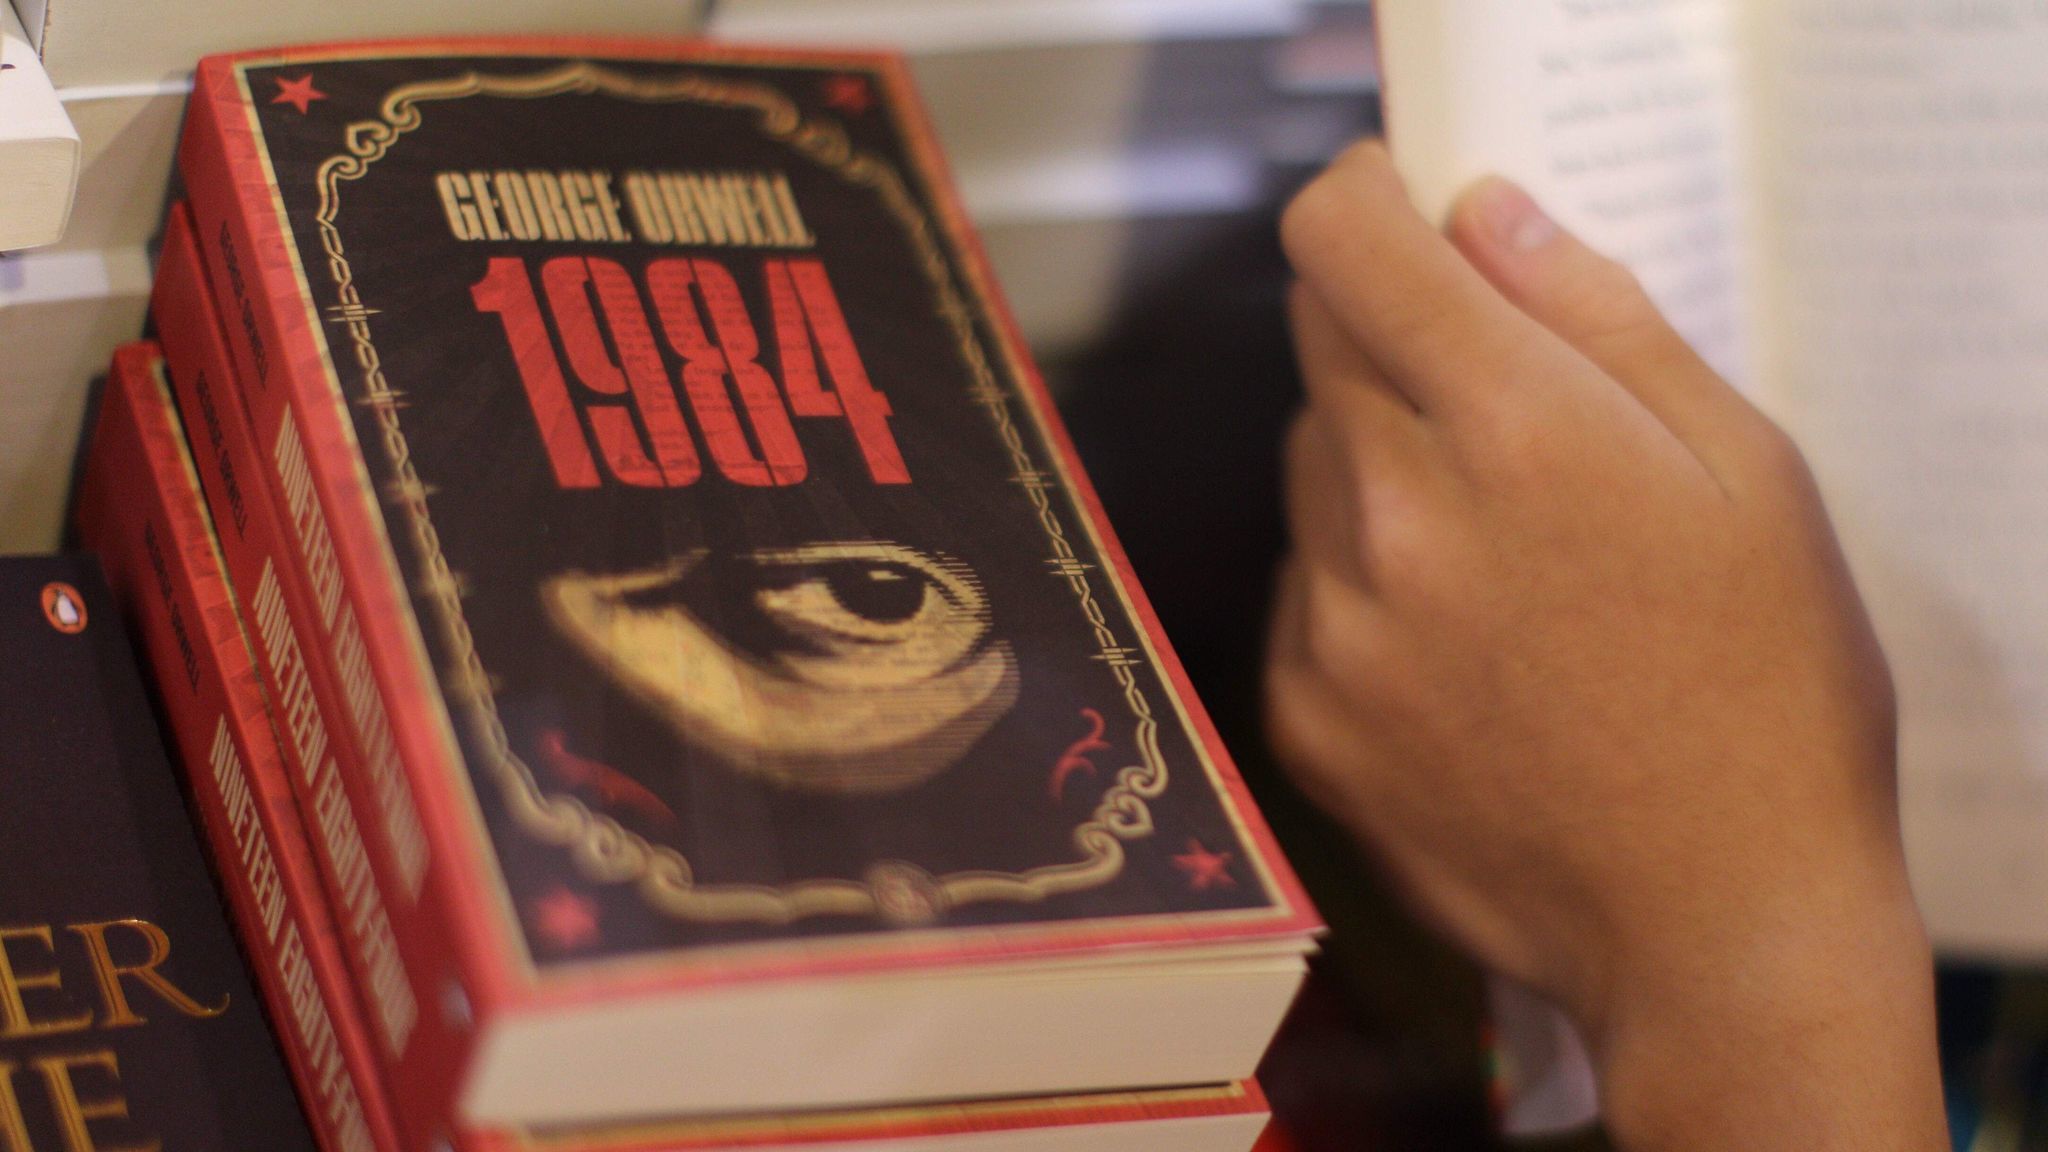 Celebrul roman „1984” al lui George Orwell, interzis in Belarus